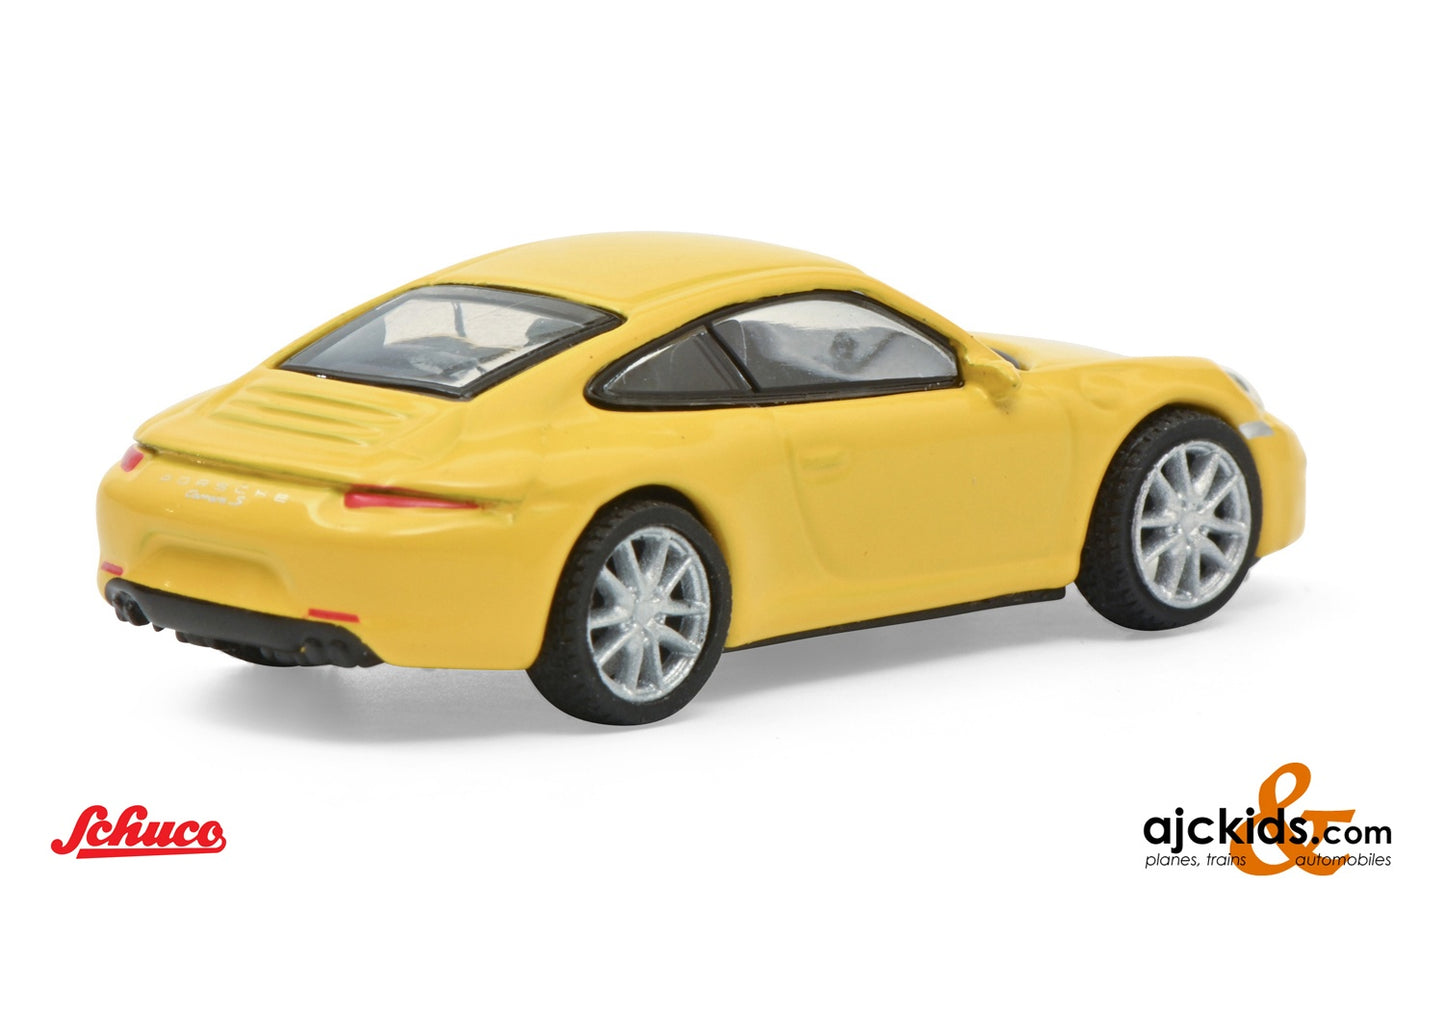 Schuco 452659900 - Porsche 911 Carrera S yellow 1:87